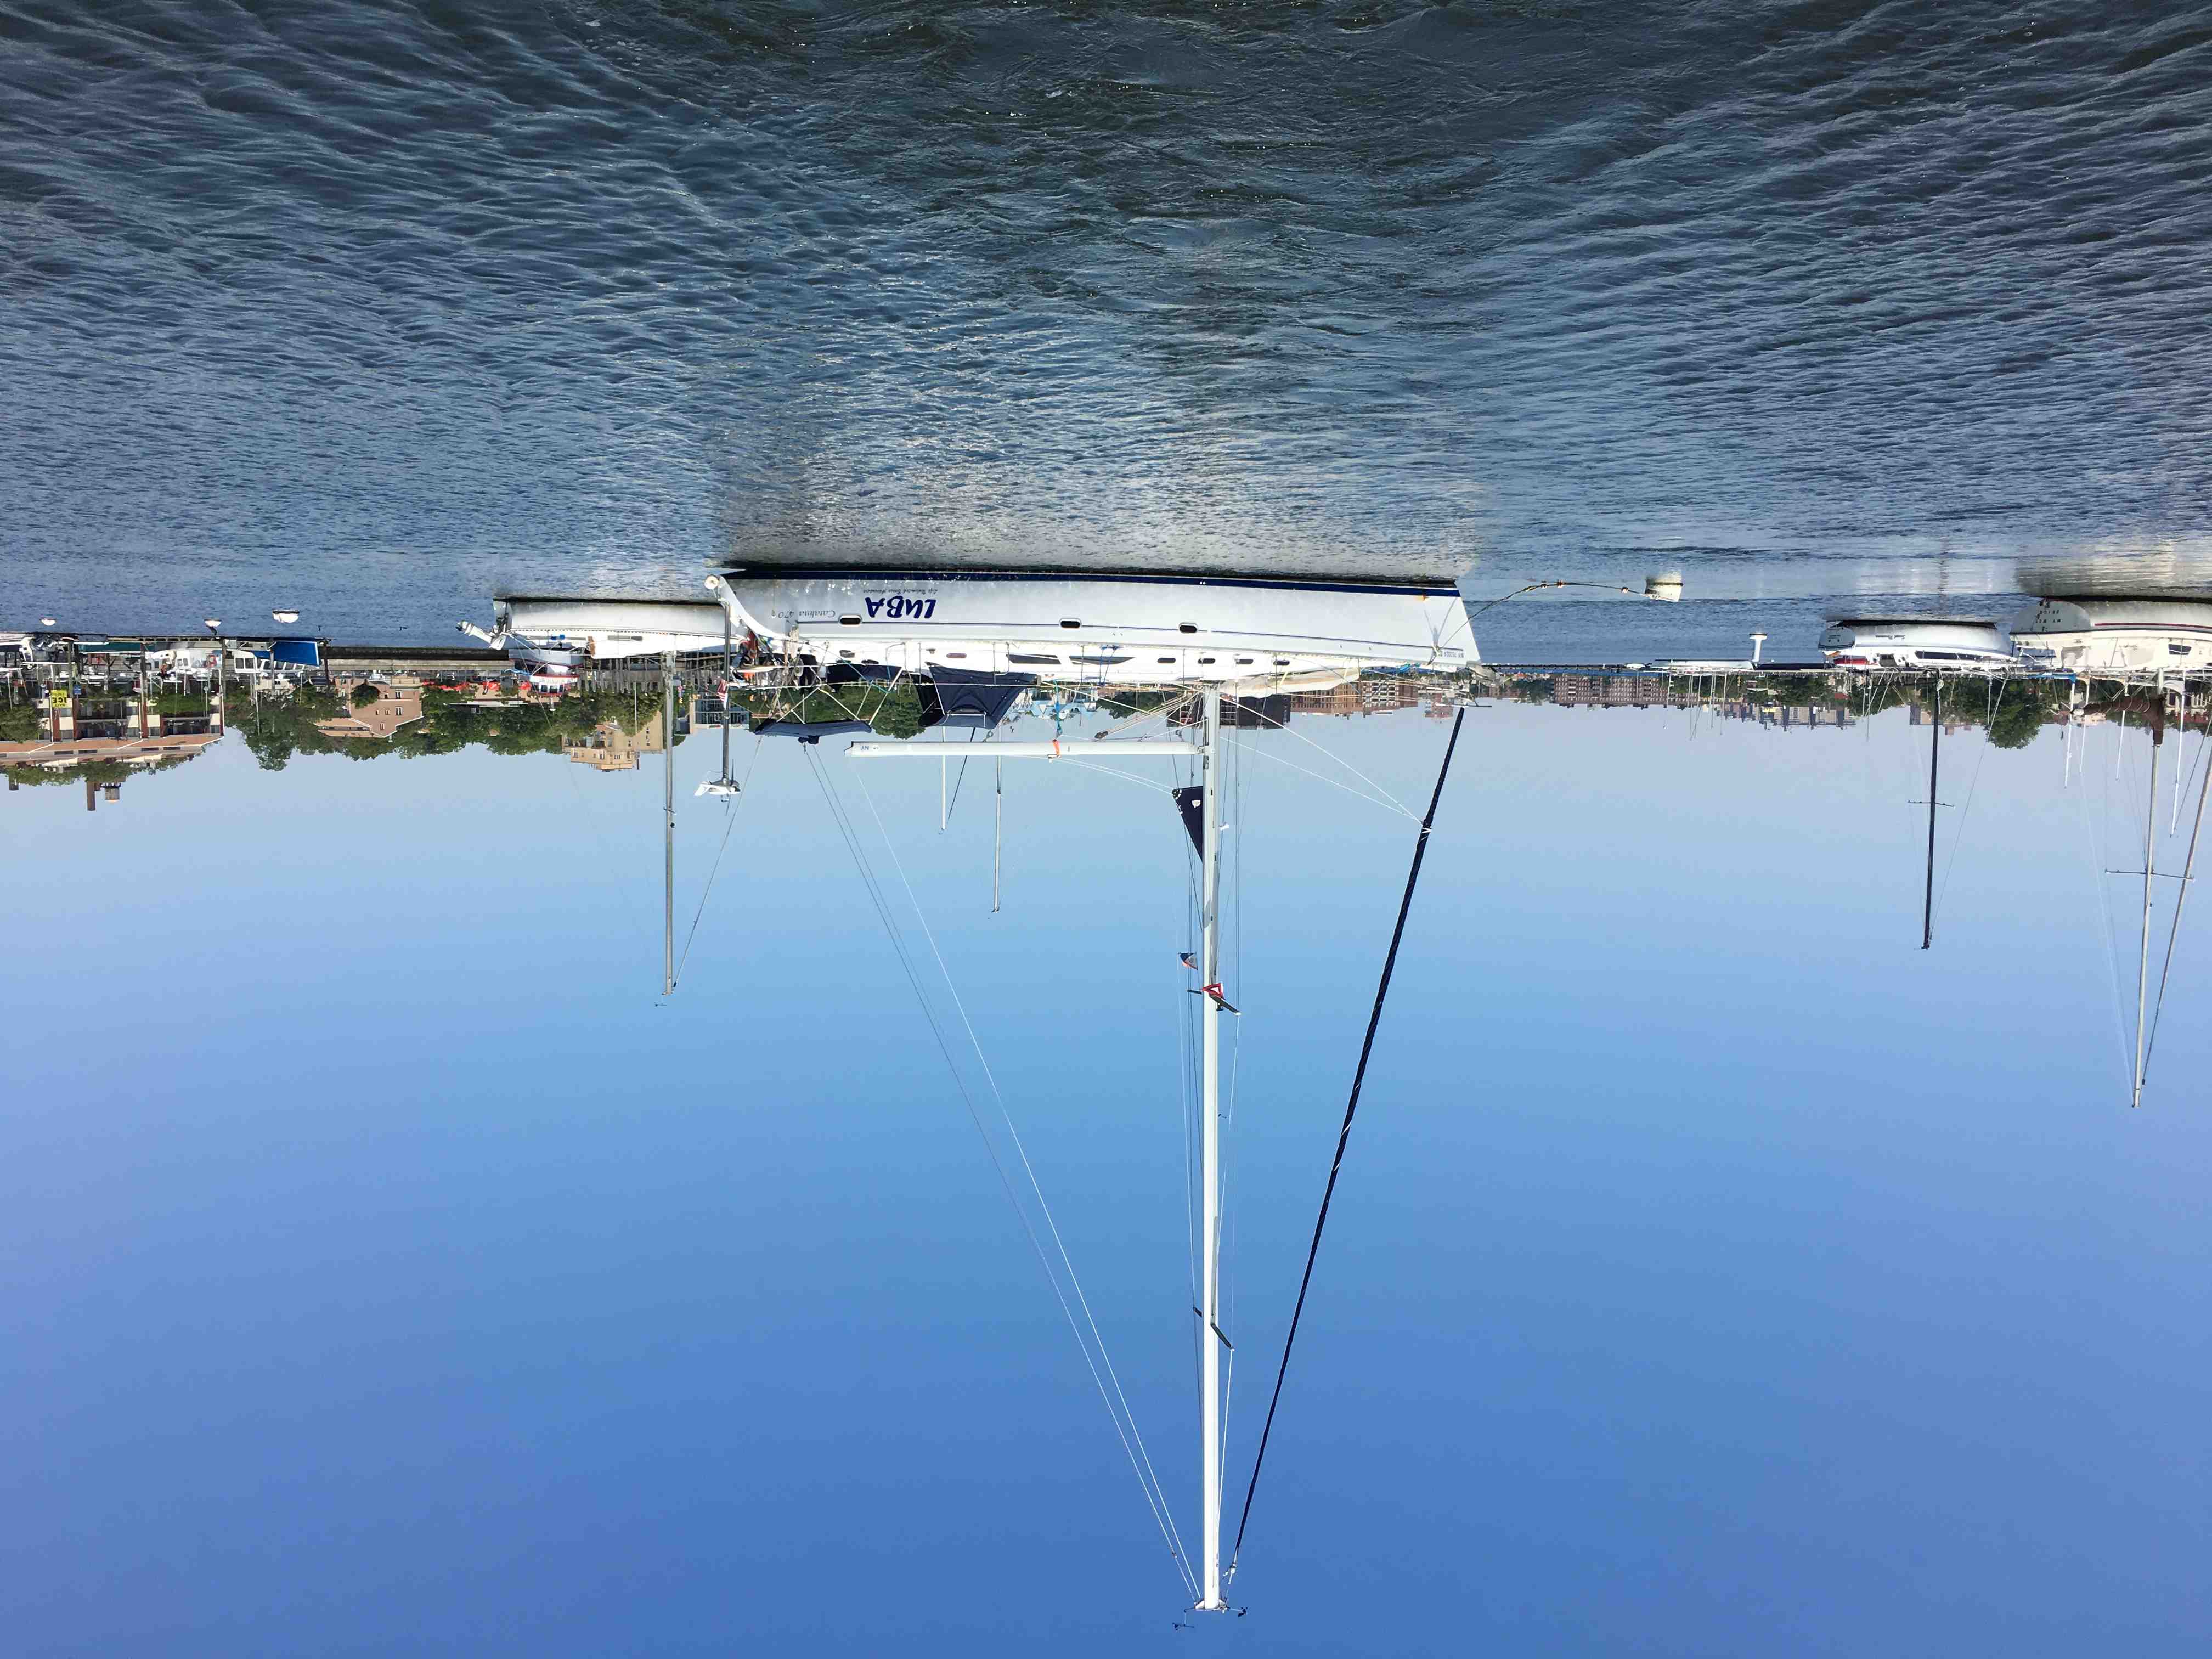 47 foot catalina sailboat